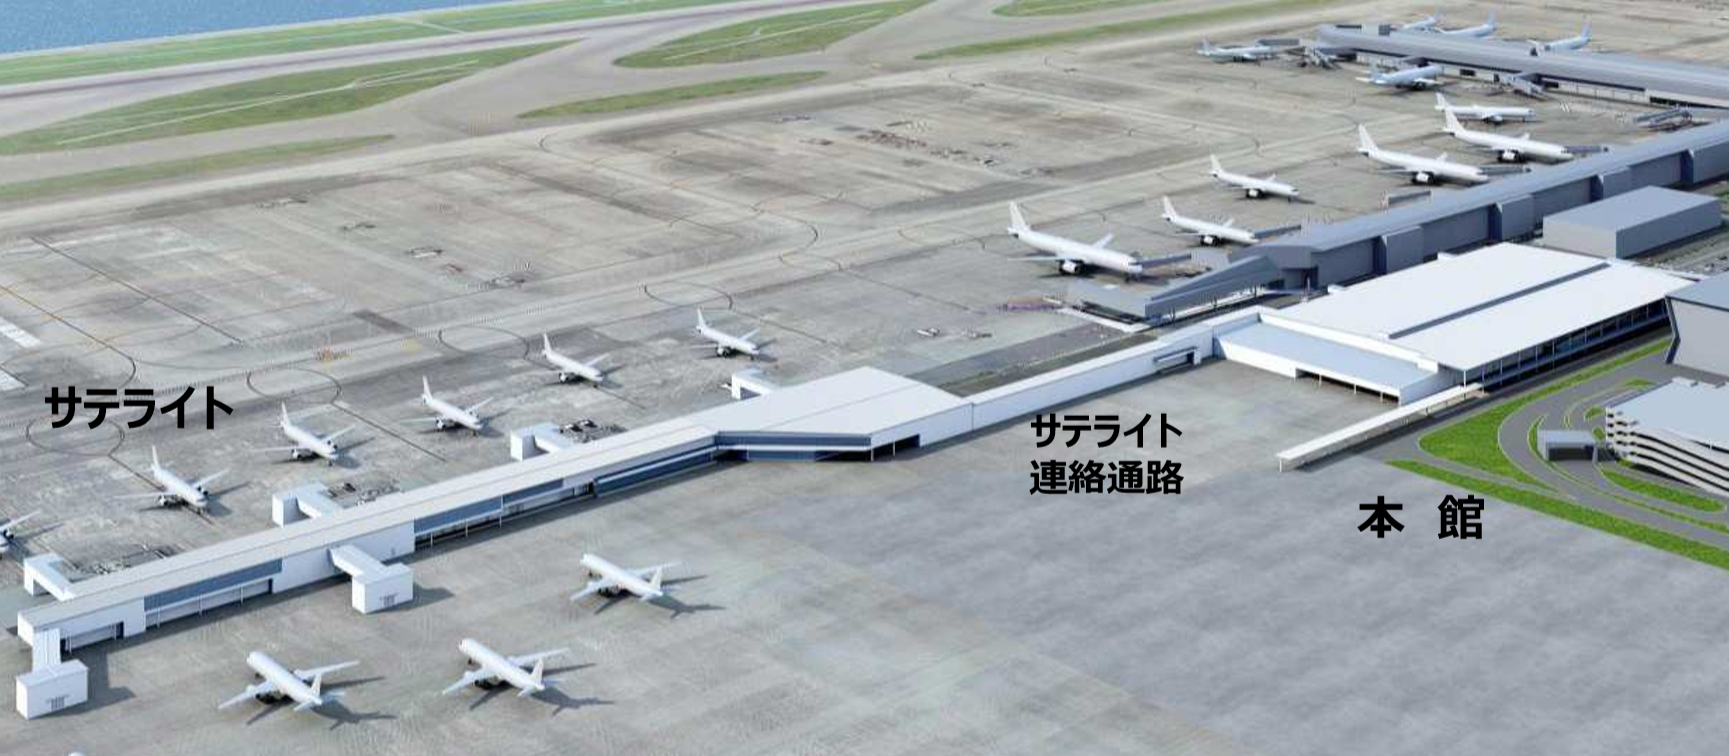 中部国際空港 セントレア 第2ターミナル 名古屋圏の都市開発 再開発 Tod